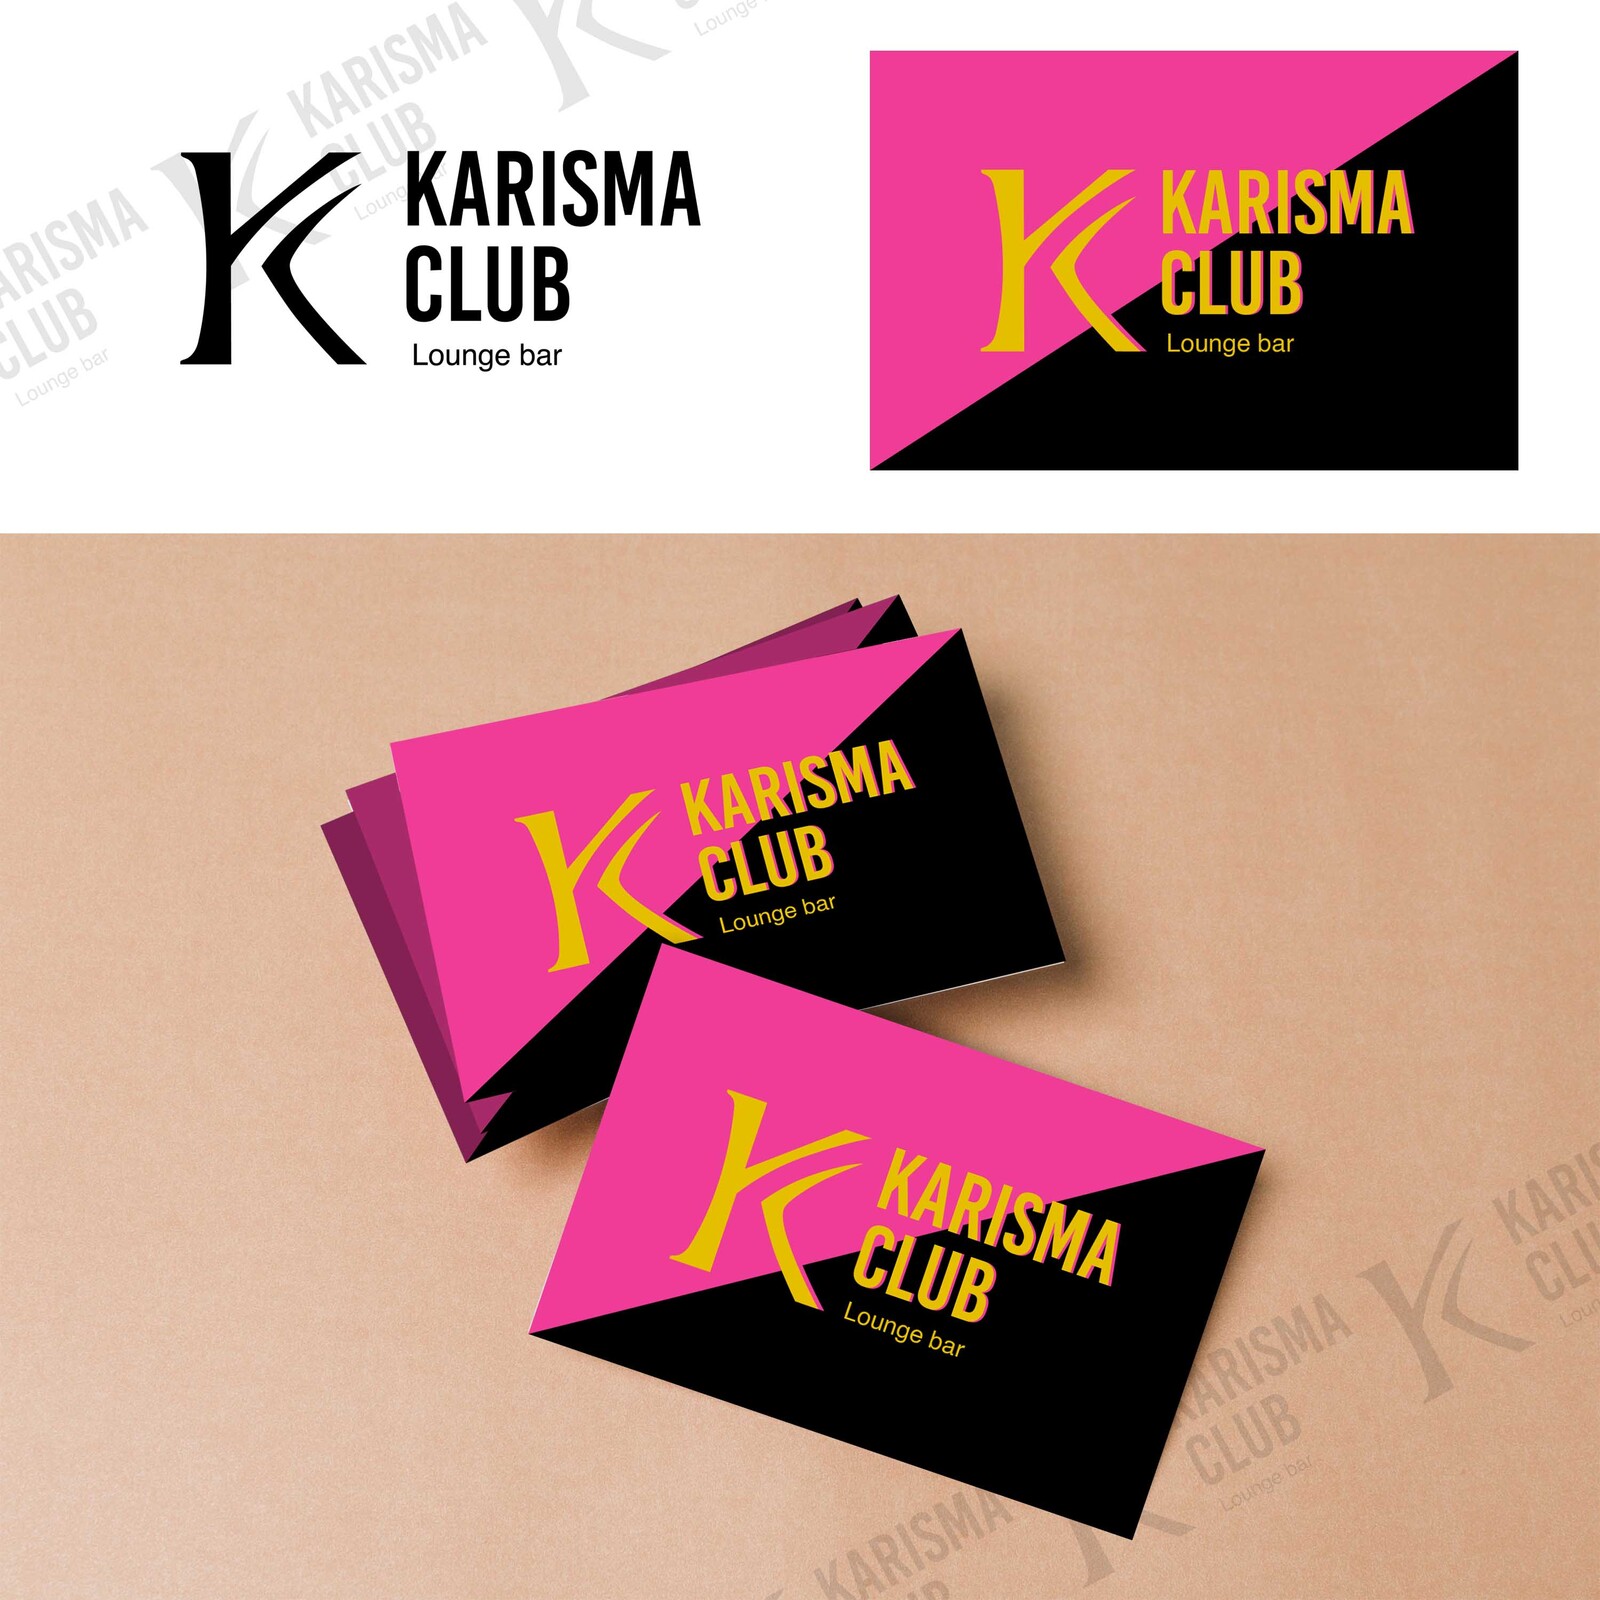 Karisma Club's logo and business card design